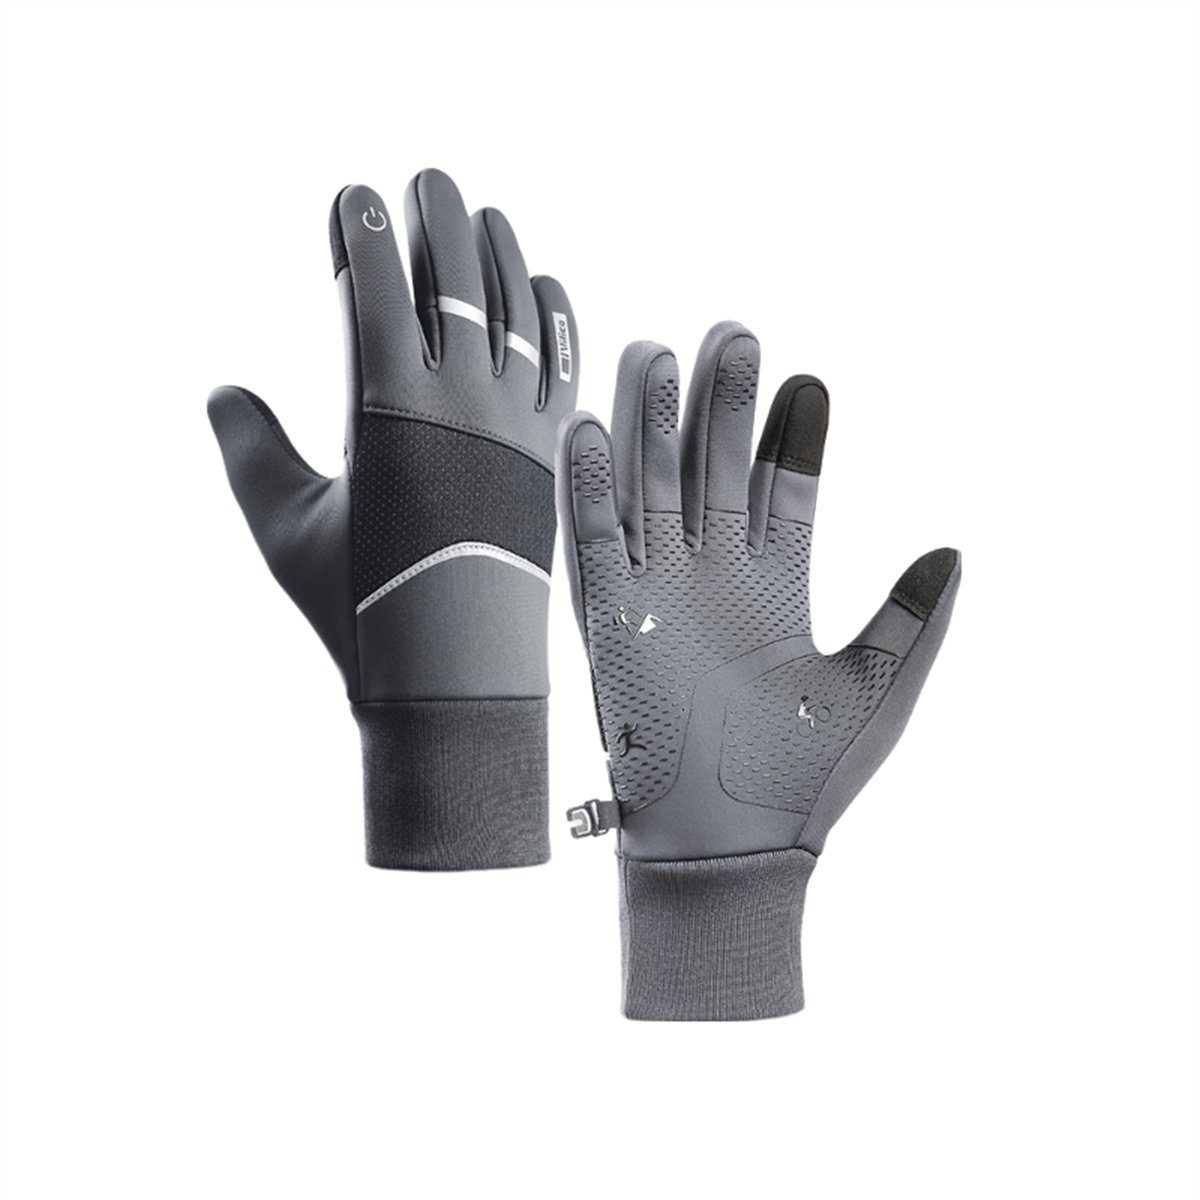 Discaver Fahrradhandschuhe Warme Sport-Touchscreen-Handschuhe für das Radfahren im Freien Wasserdicht, kältebeständig, rutschfest und samtig grau